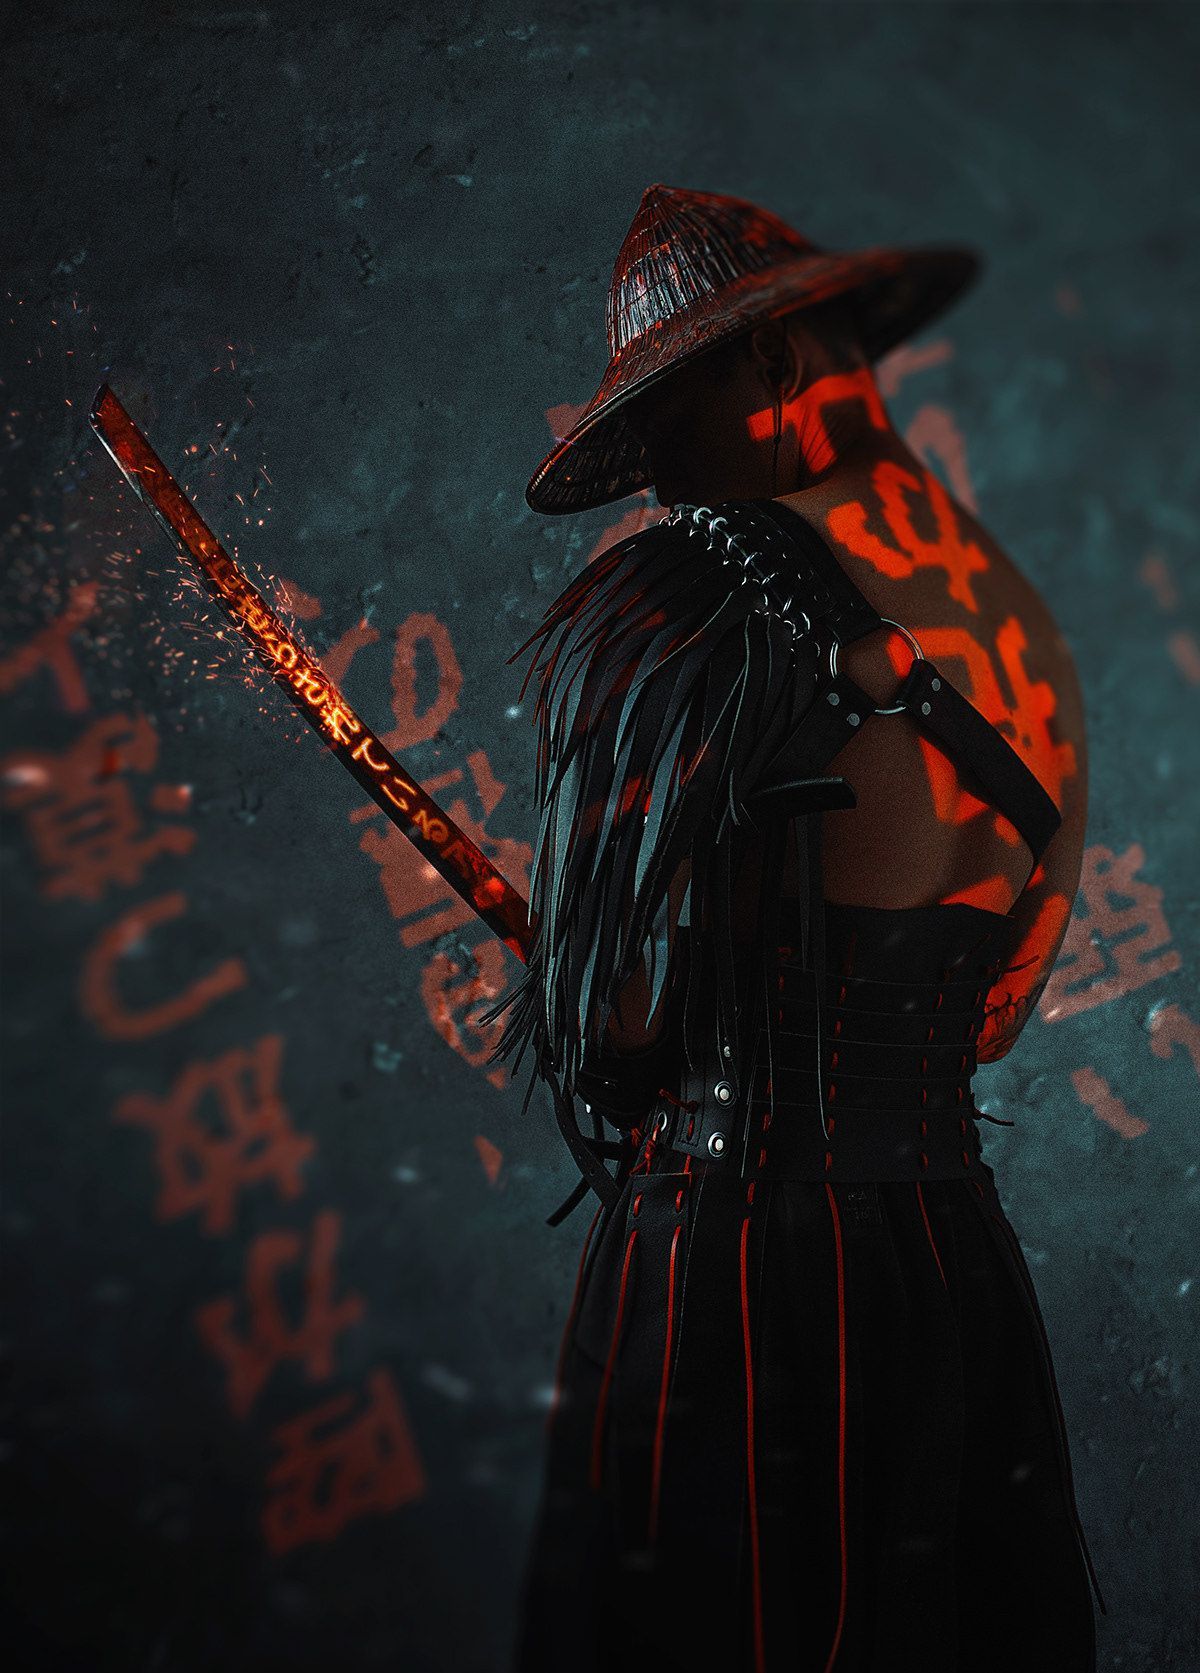 The Blind Ninja Samurai by Dmitry Mel. Samurai artwork, Samurai wallpaper, Samurai art